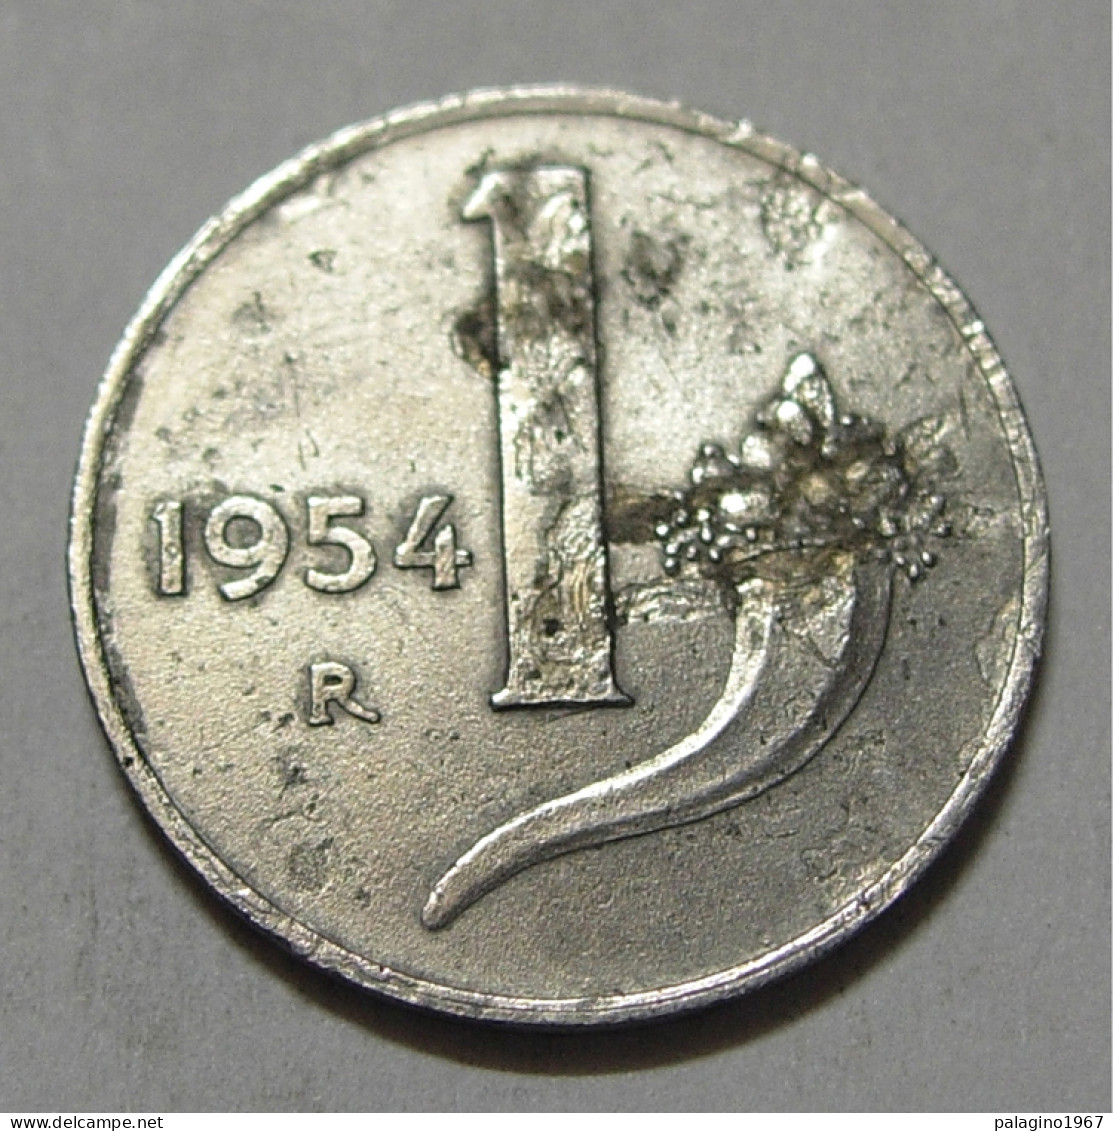 REPUBBLICA ITALIANA 1 Lira Cornucopia 1954 MB - 1 Lira